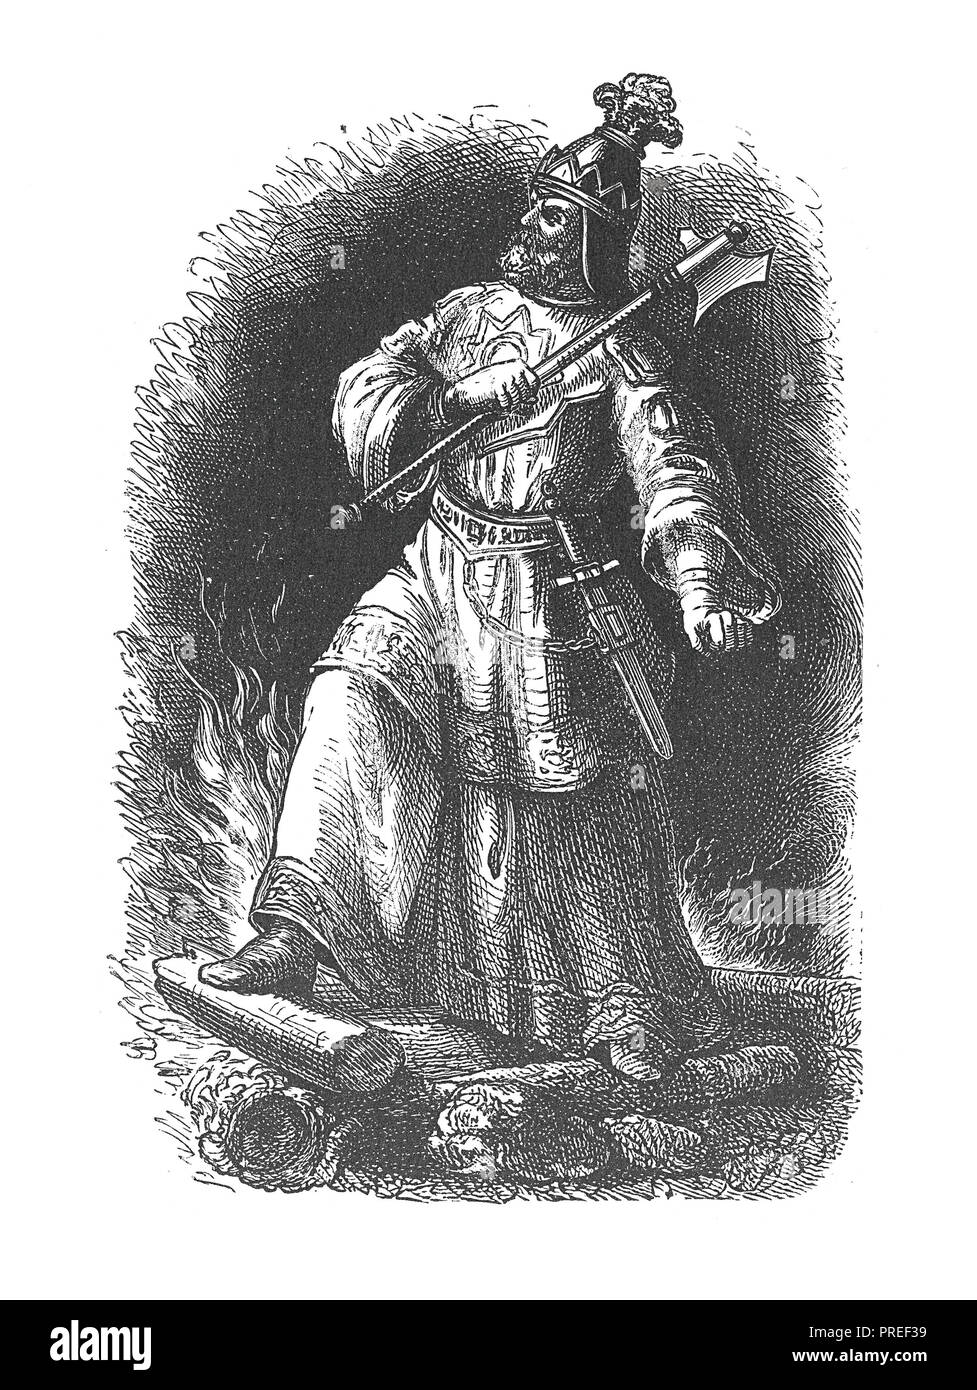 Originale Kunstwerke von Attila der Hunne, der Herrscher über die Hunnen von 434 bis zu seinem Tod in 453. In eine bildliche Geschichte der Großen der Welt natio veröffentlicht. Stockfoto